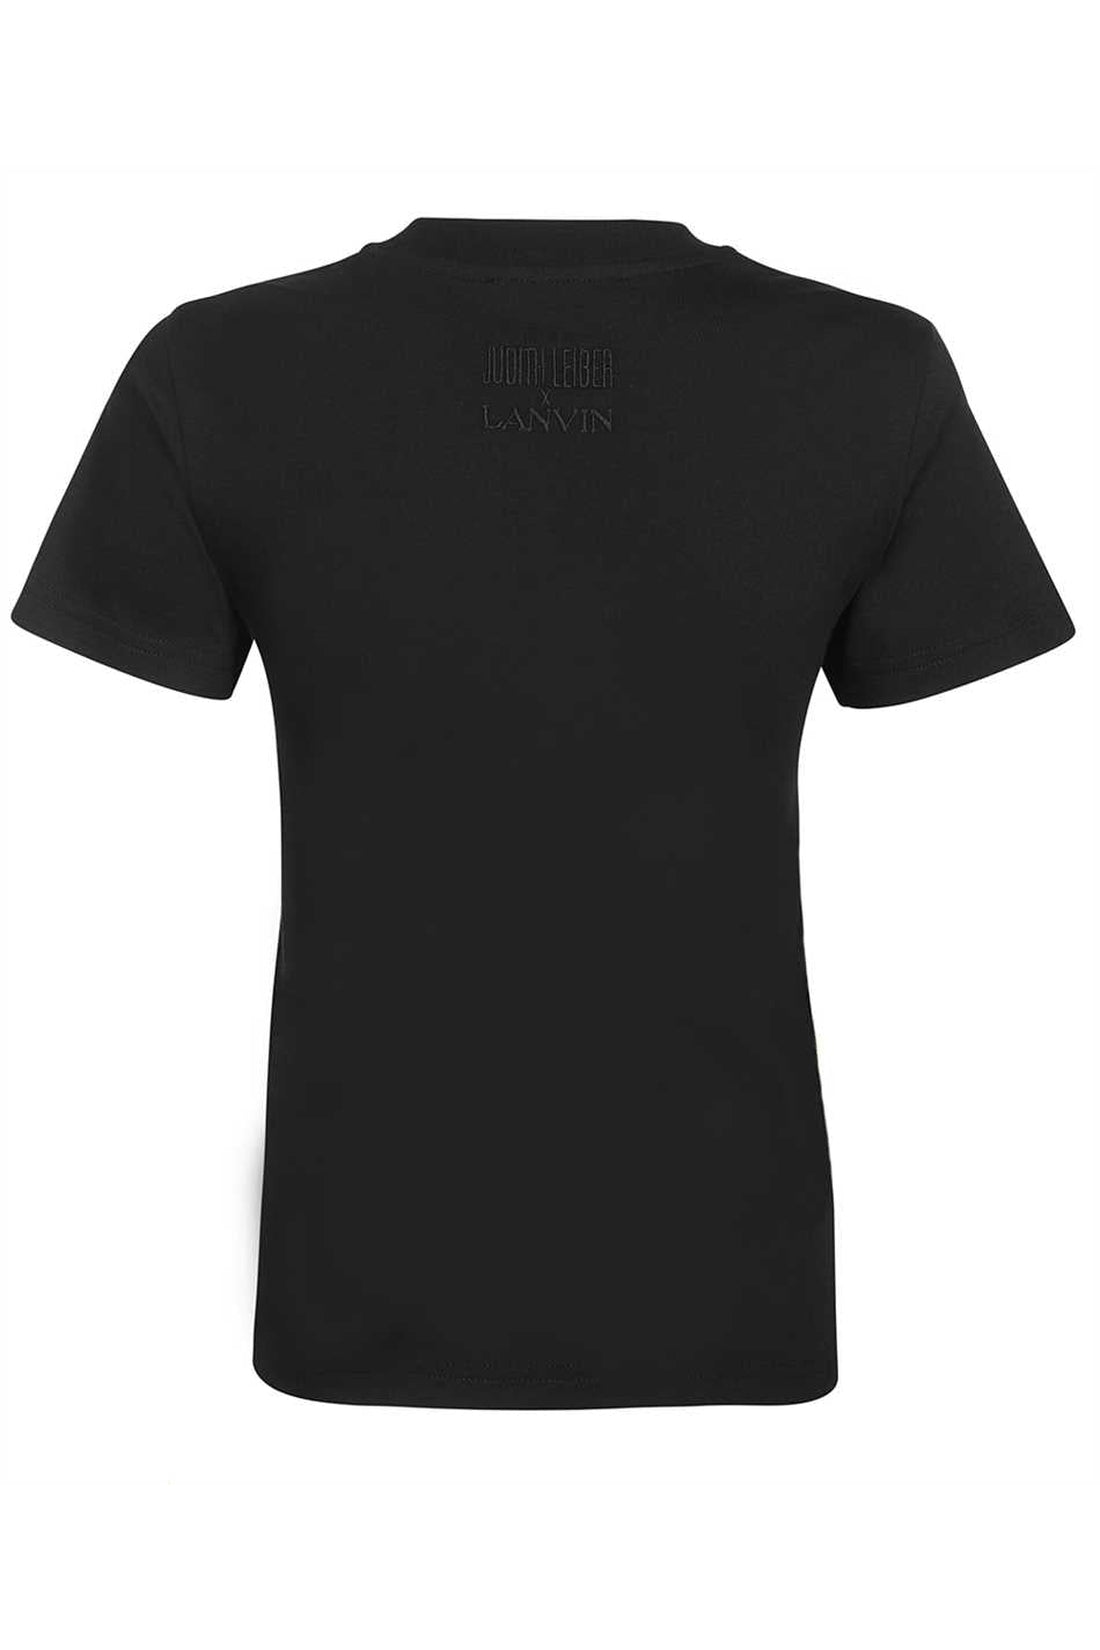 Lanvin-OUTLET-SALE-Printed cotton T-shirt-ARCHIVIST